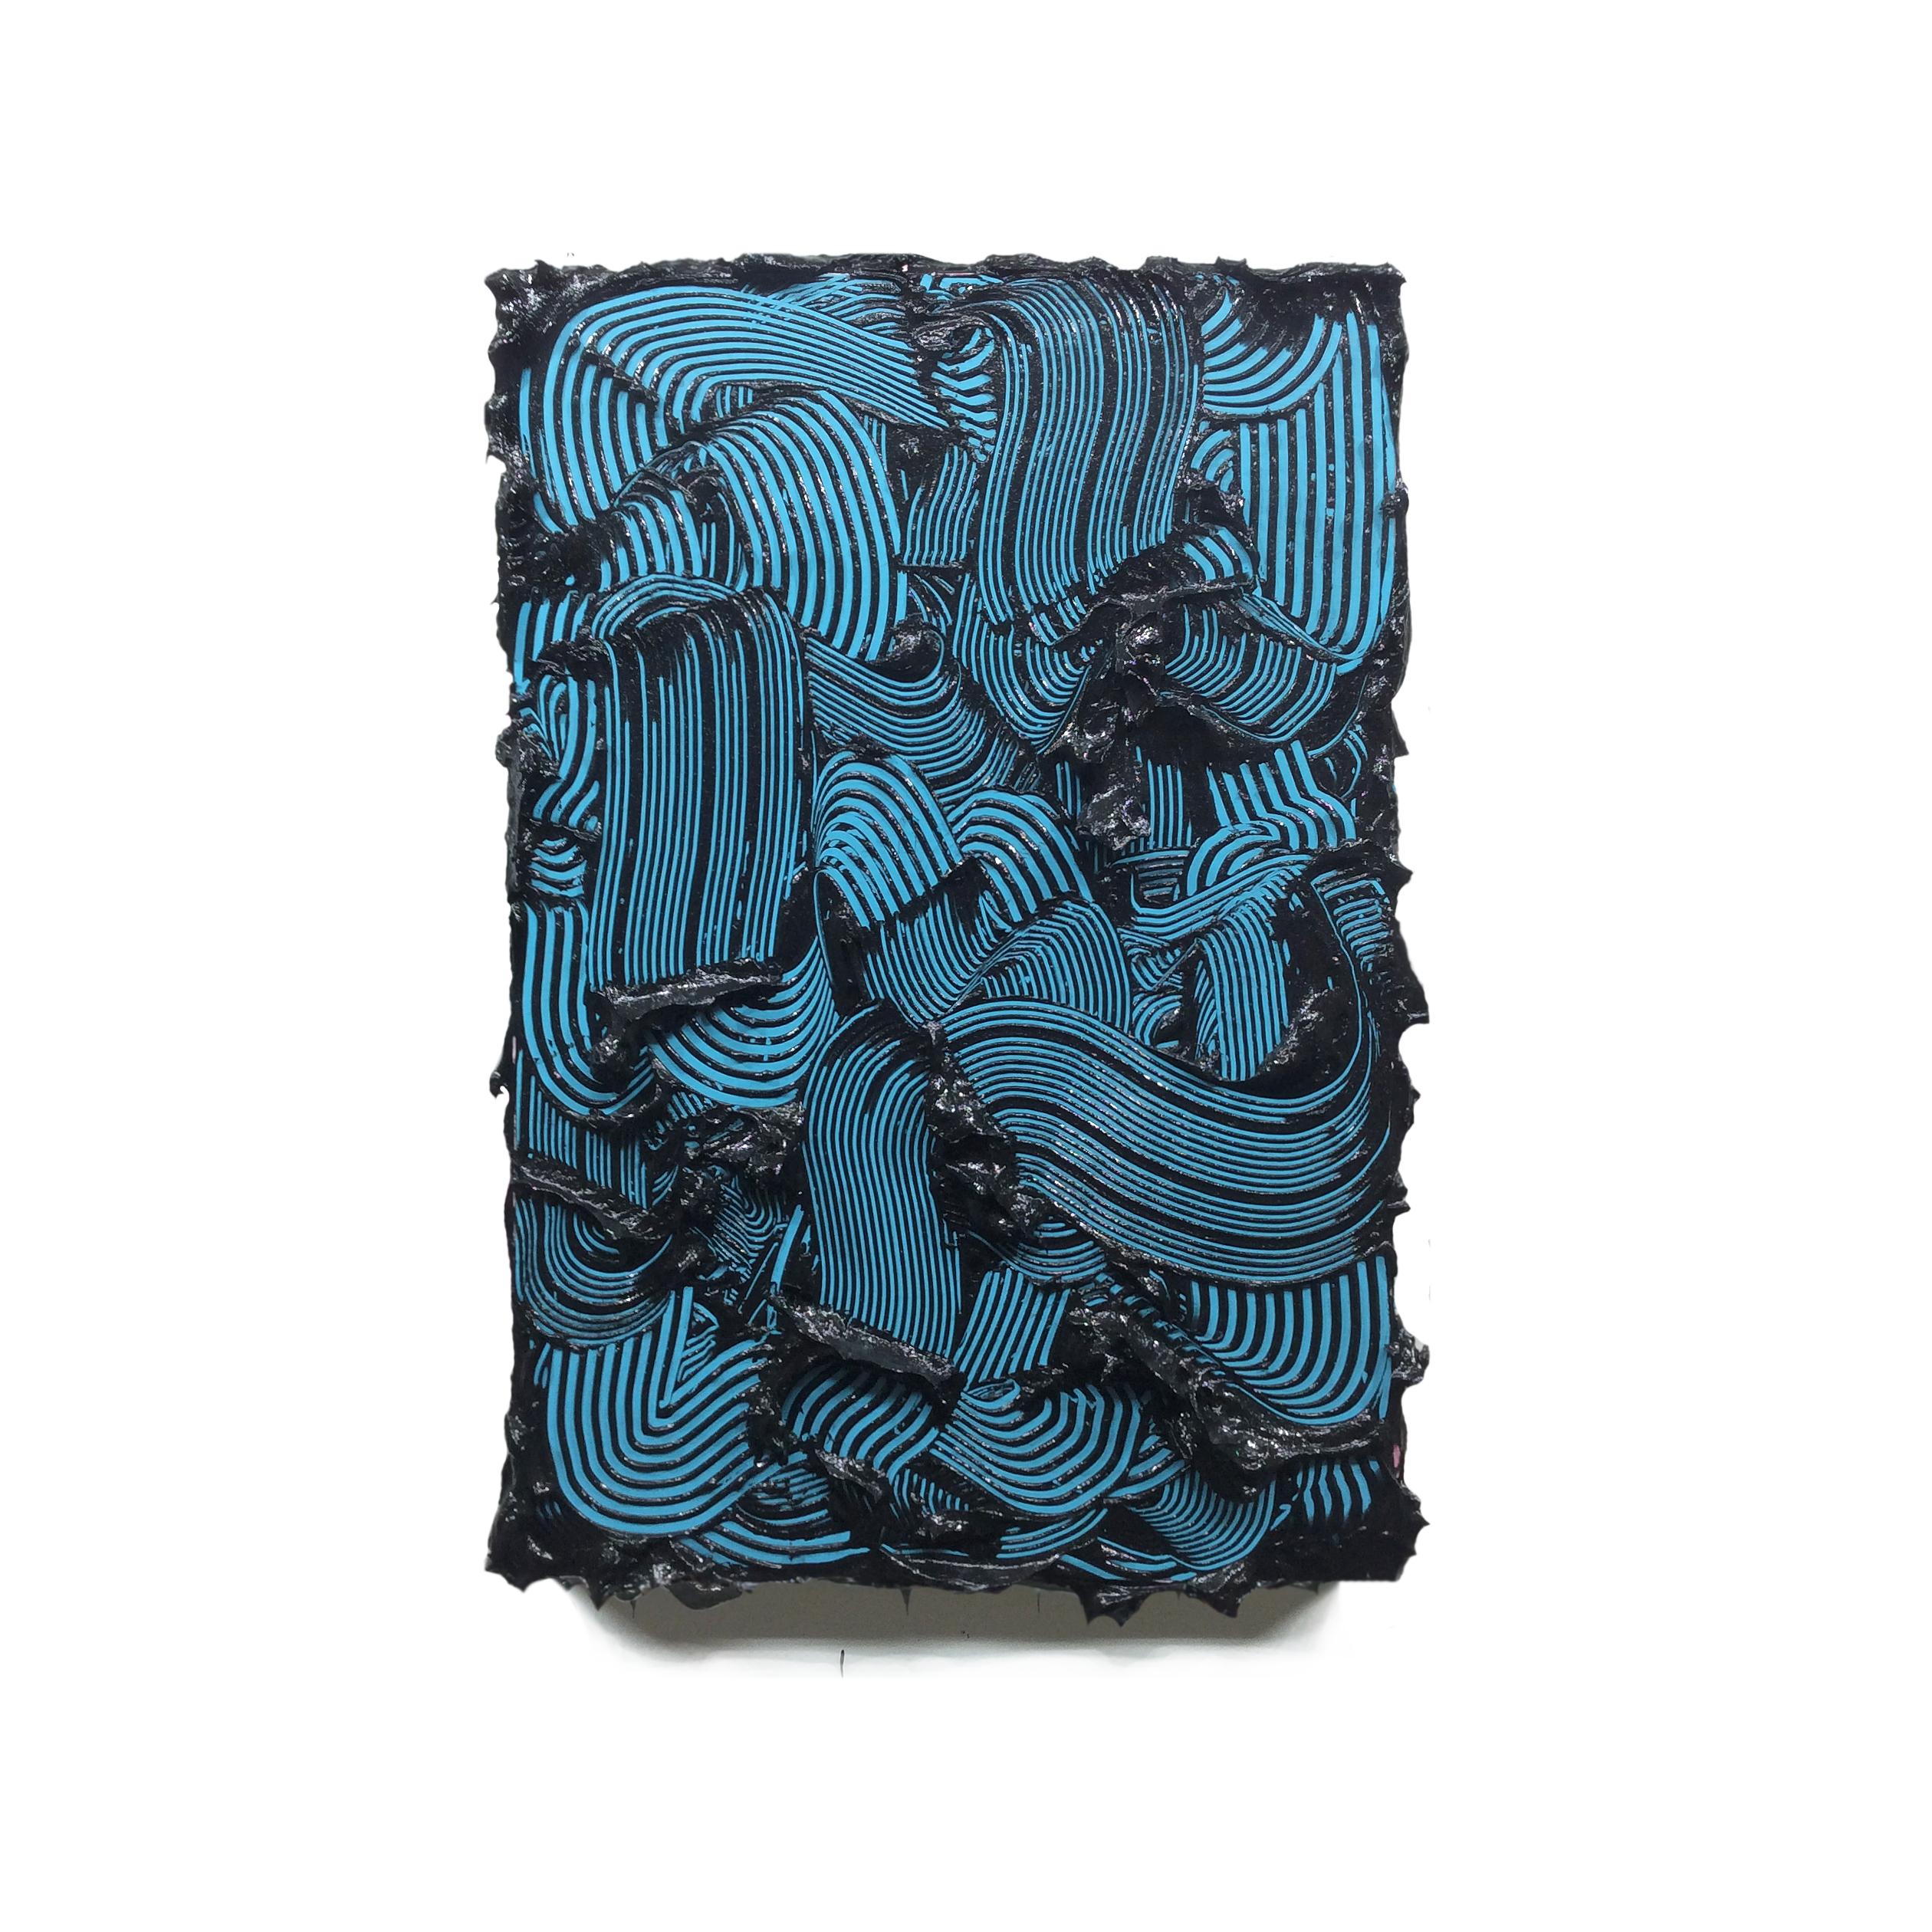 Peinture contemporaine texturée Poseidon, couleurs vives, traits bleus, abstrait - Sculpture de Tim Nikiforuk